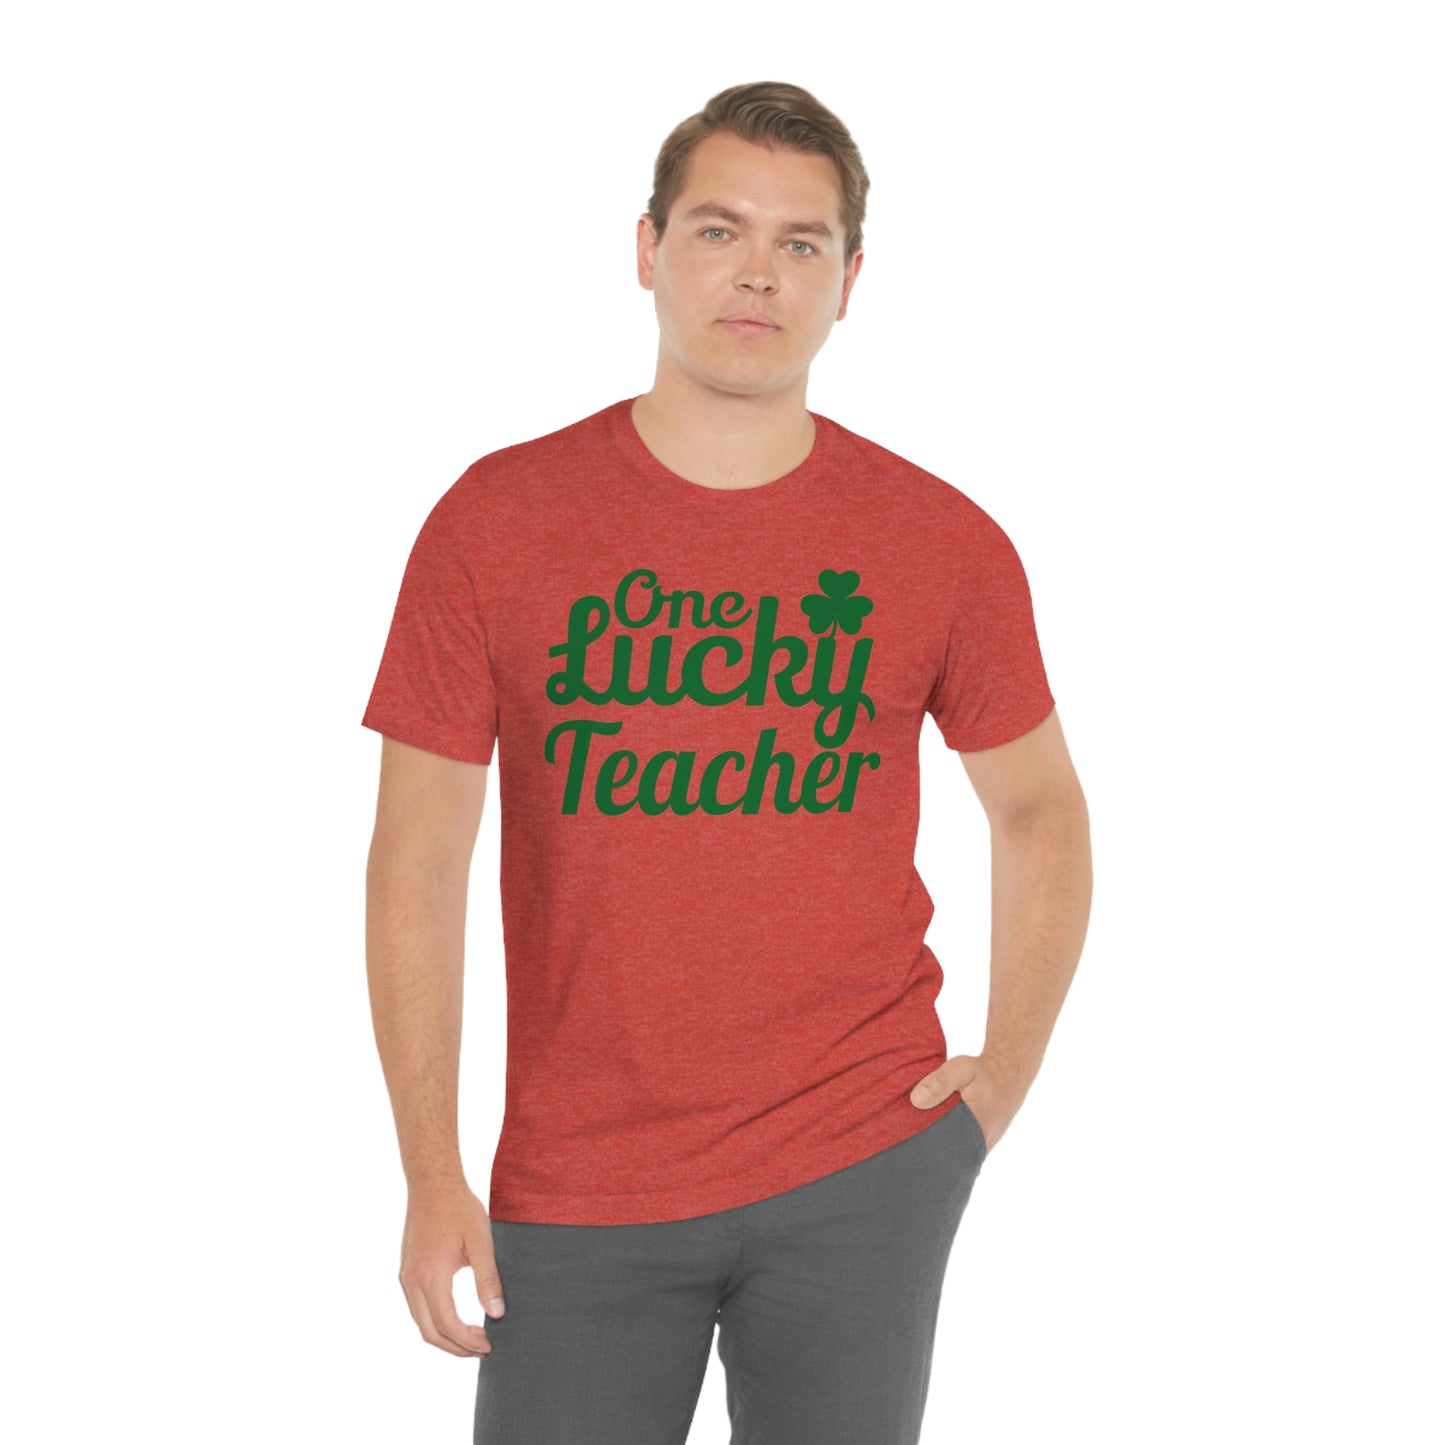 One Lucky Teacher Shirt feeling Lucky St Patrick's Day shirt - Funny St Paddy's day Funny Shirt gift for teacher shirts teacher gift